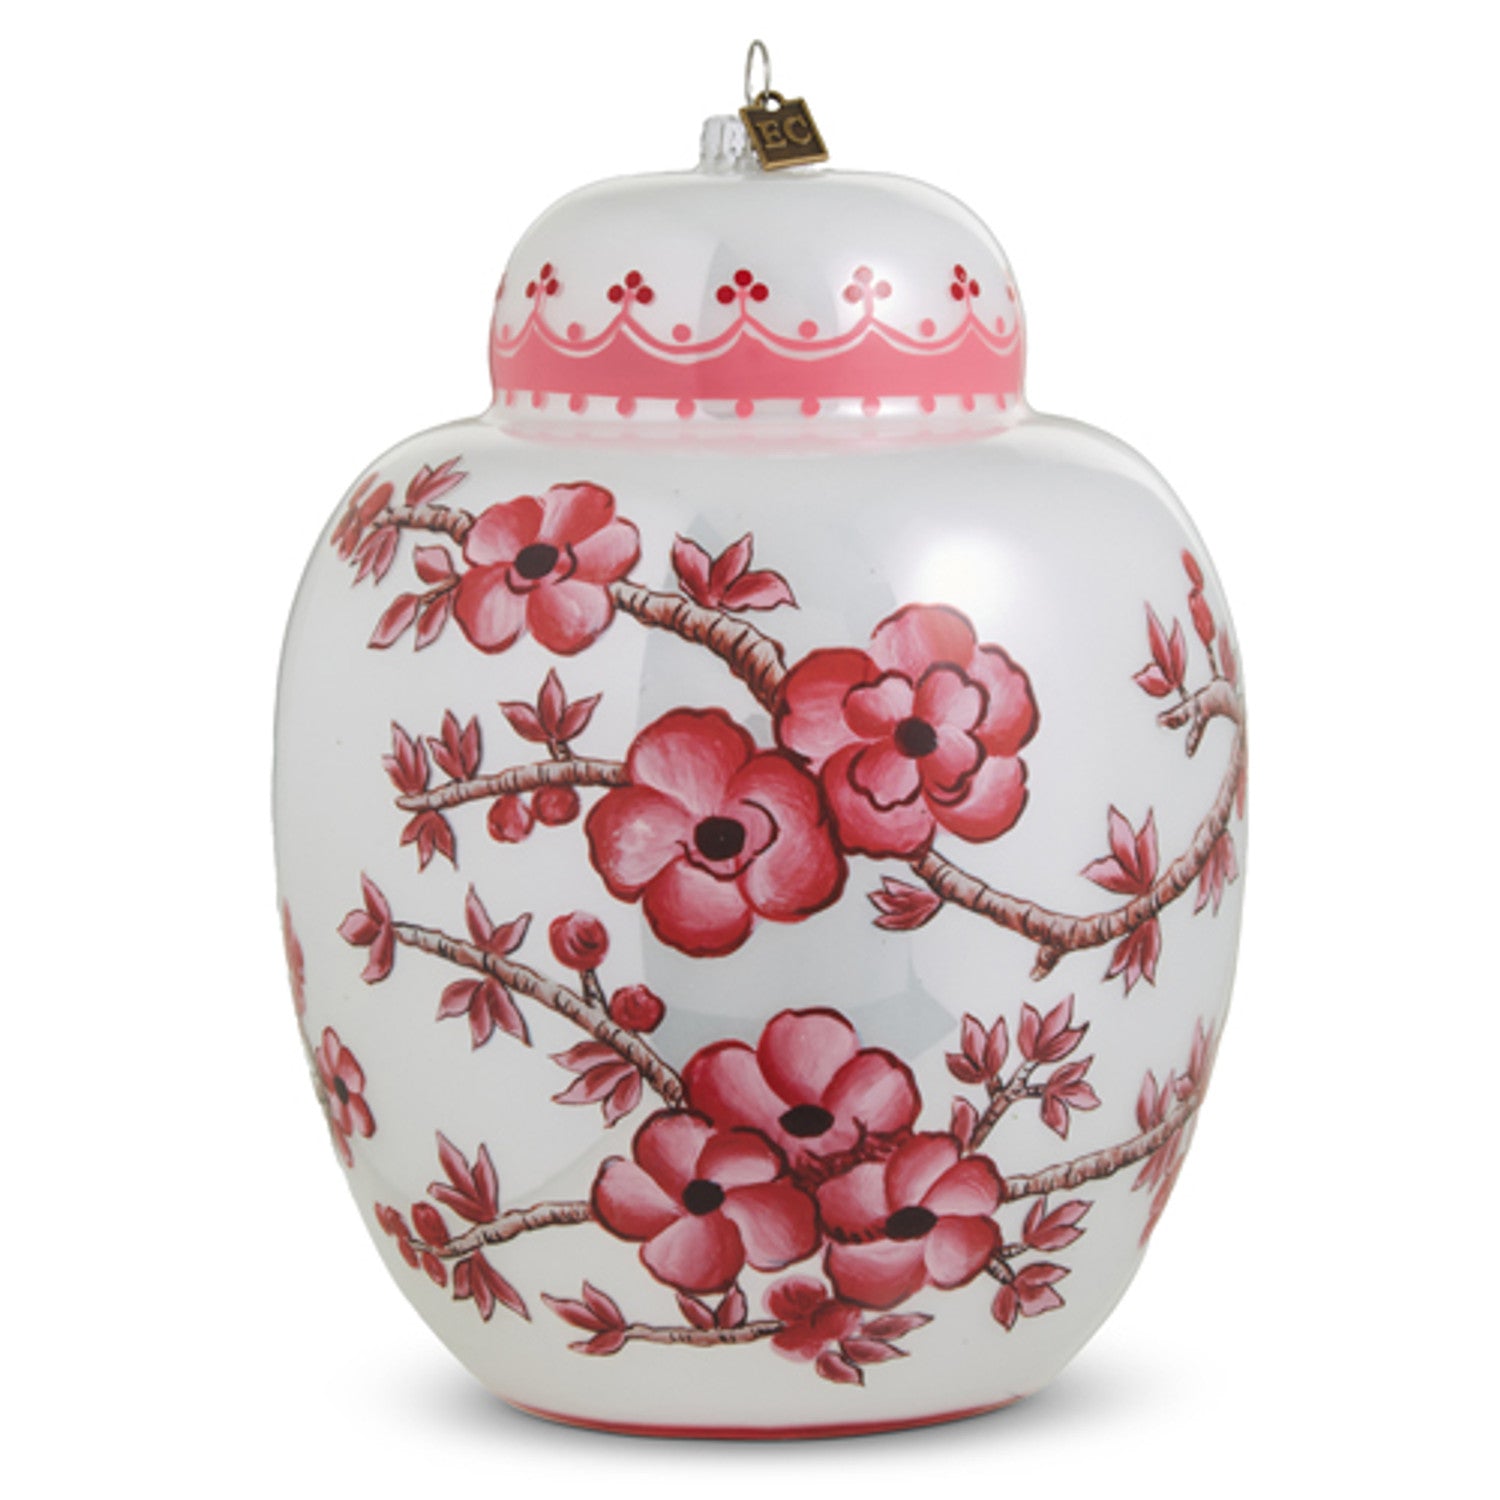 Pink Ginger Jar Ornament - 6.5"